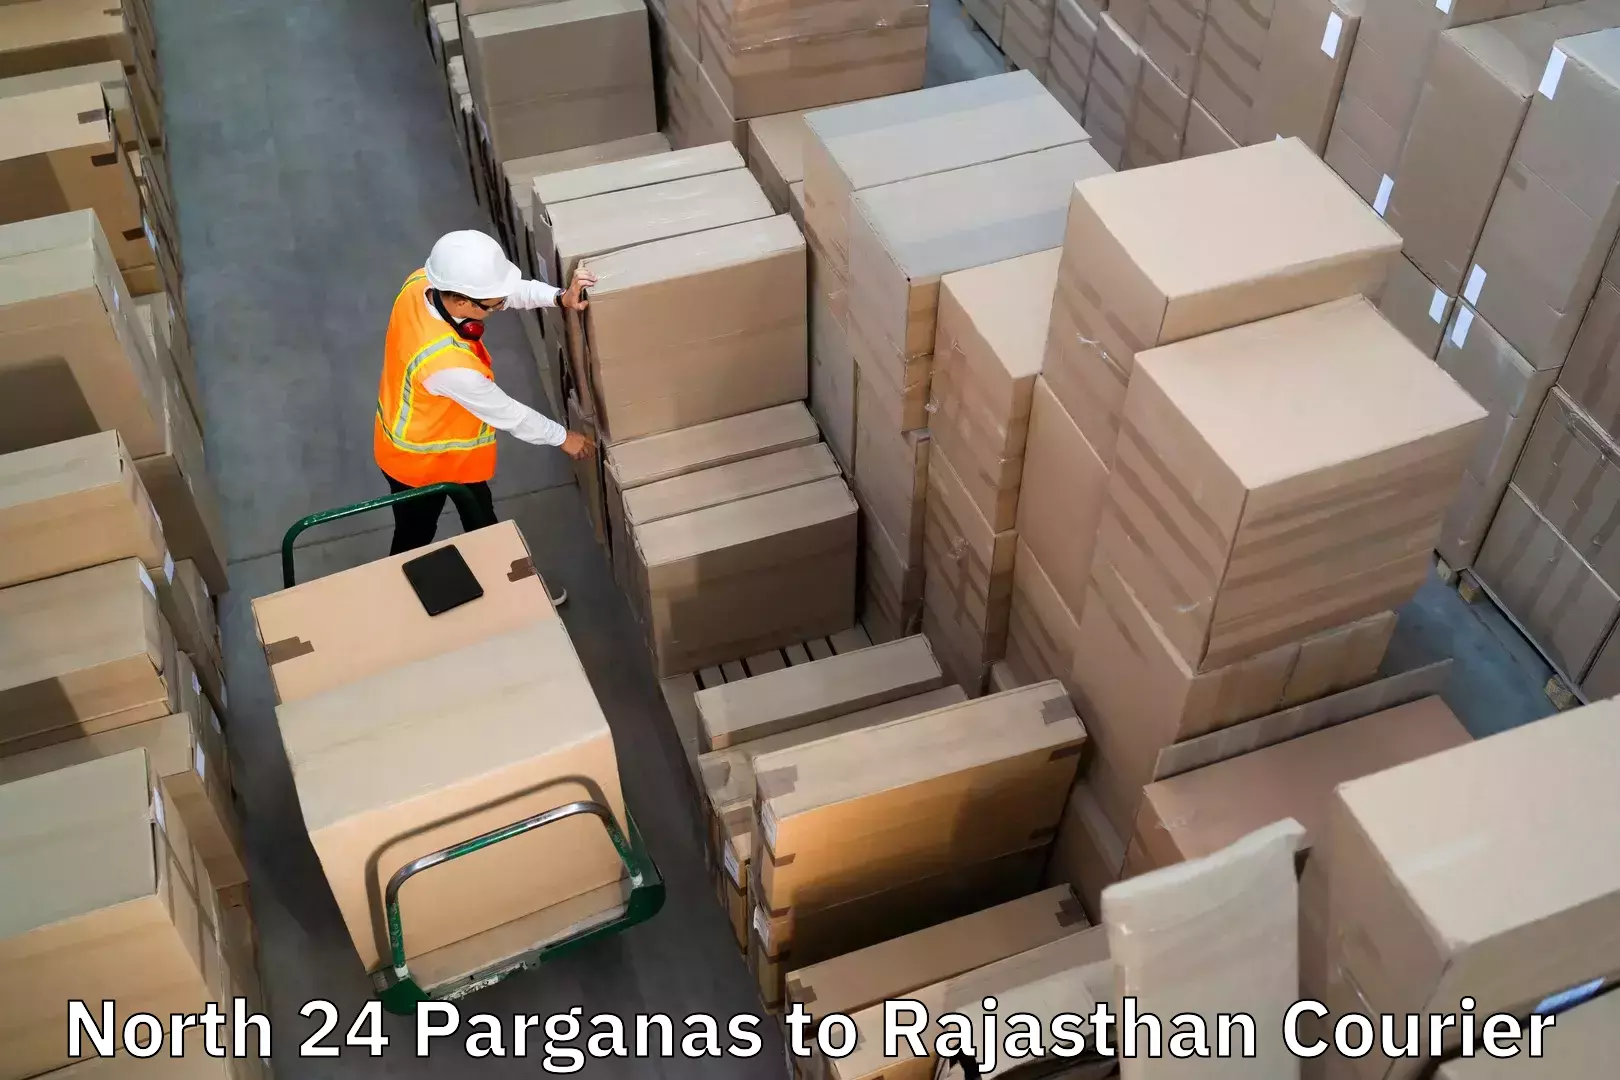 Personal effects shipping North 24 Parganas to Banswara